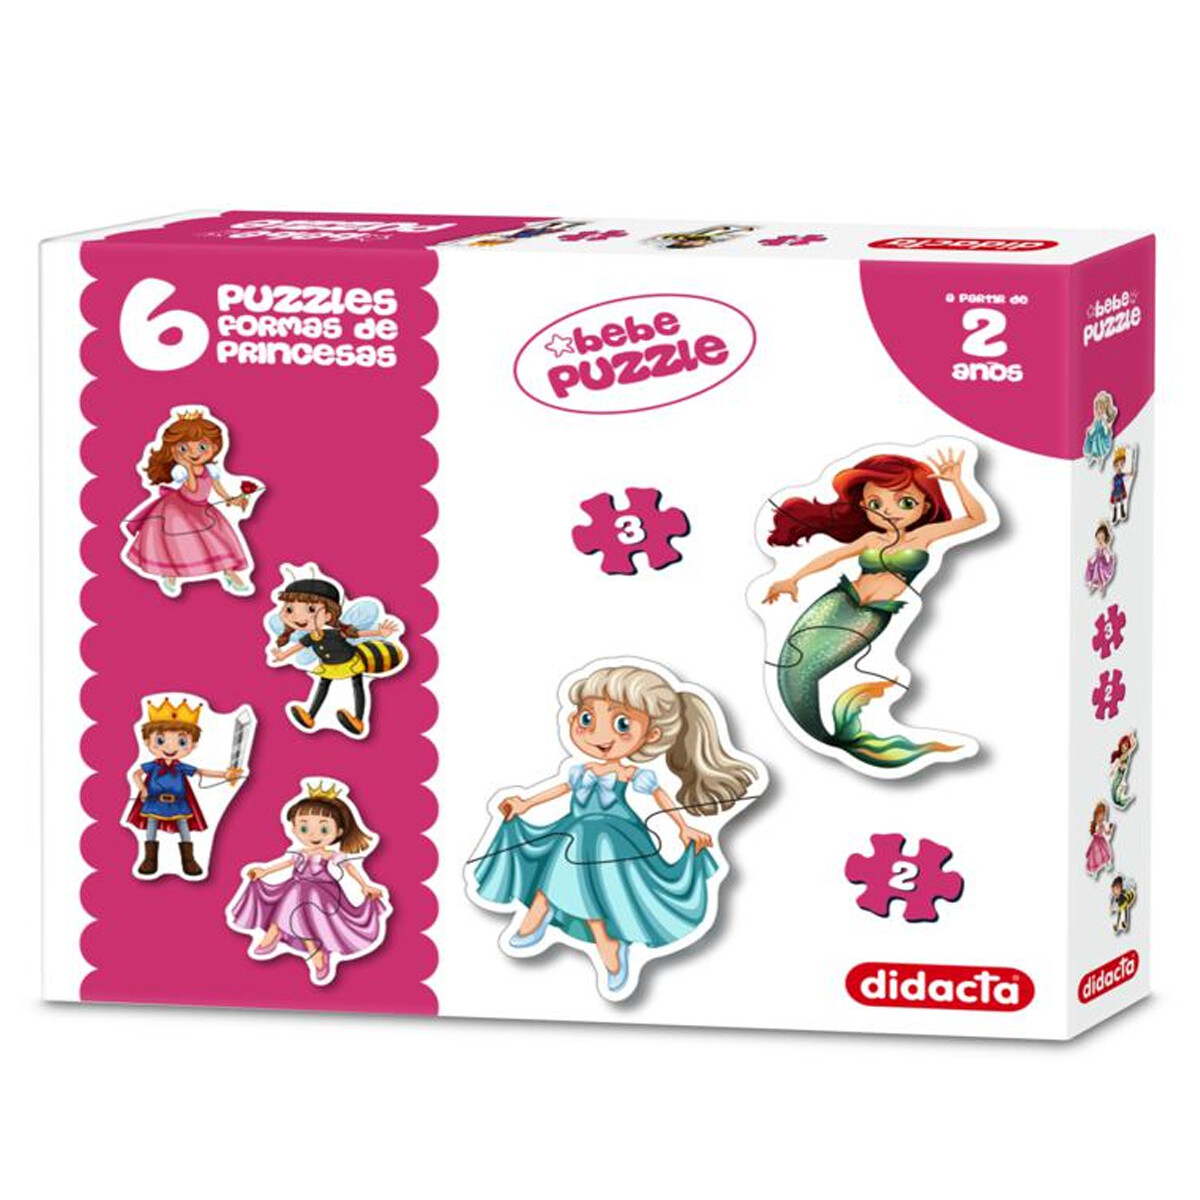 Puzzle Bebe Primer Puzzle Didacta Varios Modelos - Princesas 